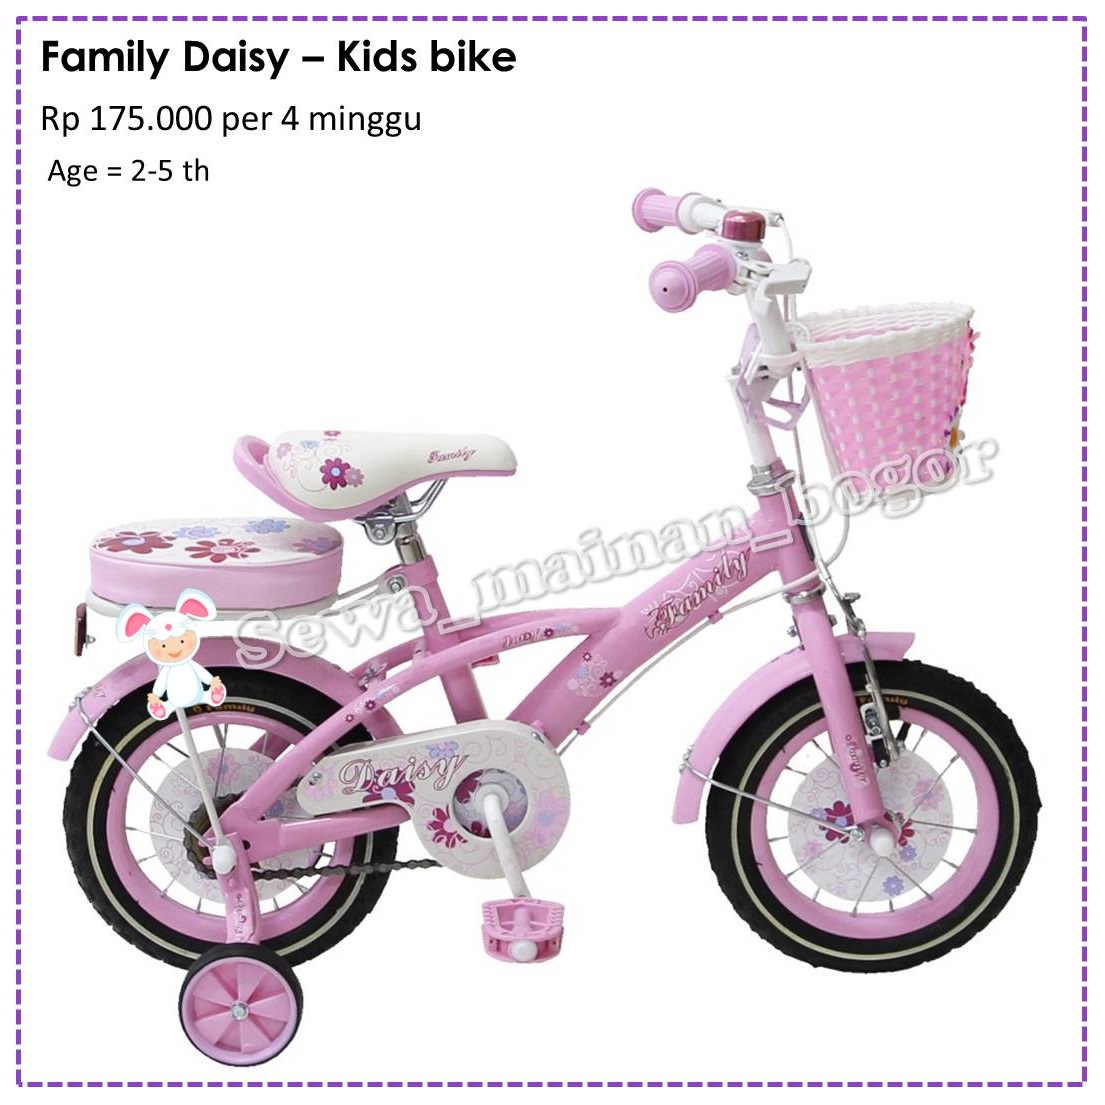 Family Daisy bike